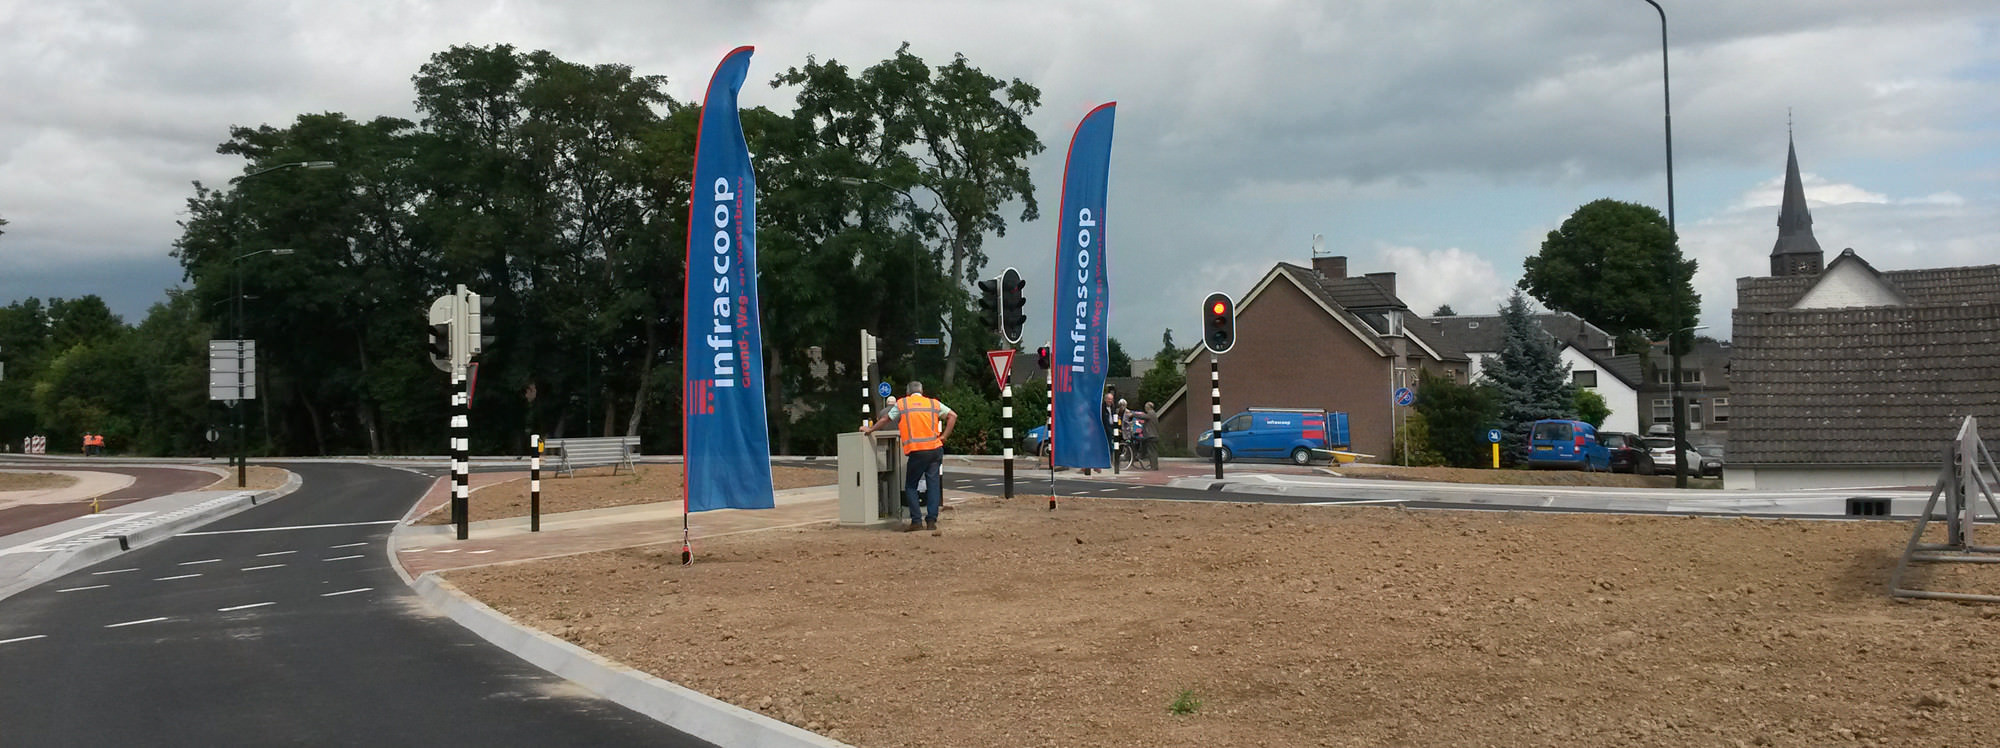 Reconstructie van Heemstraweg  Weurt-Ewijk